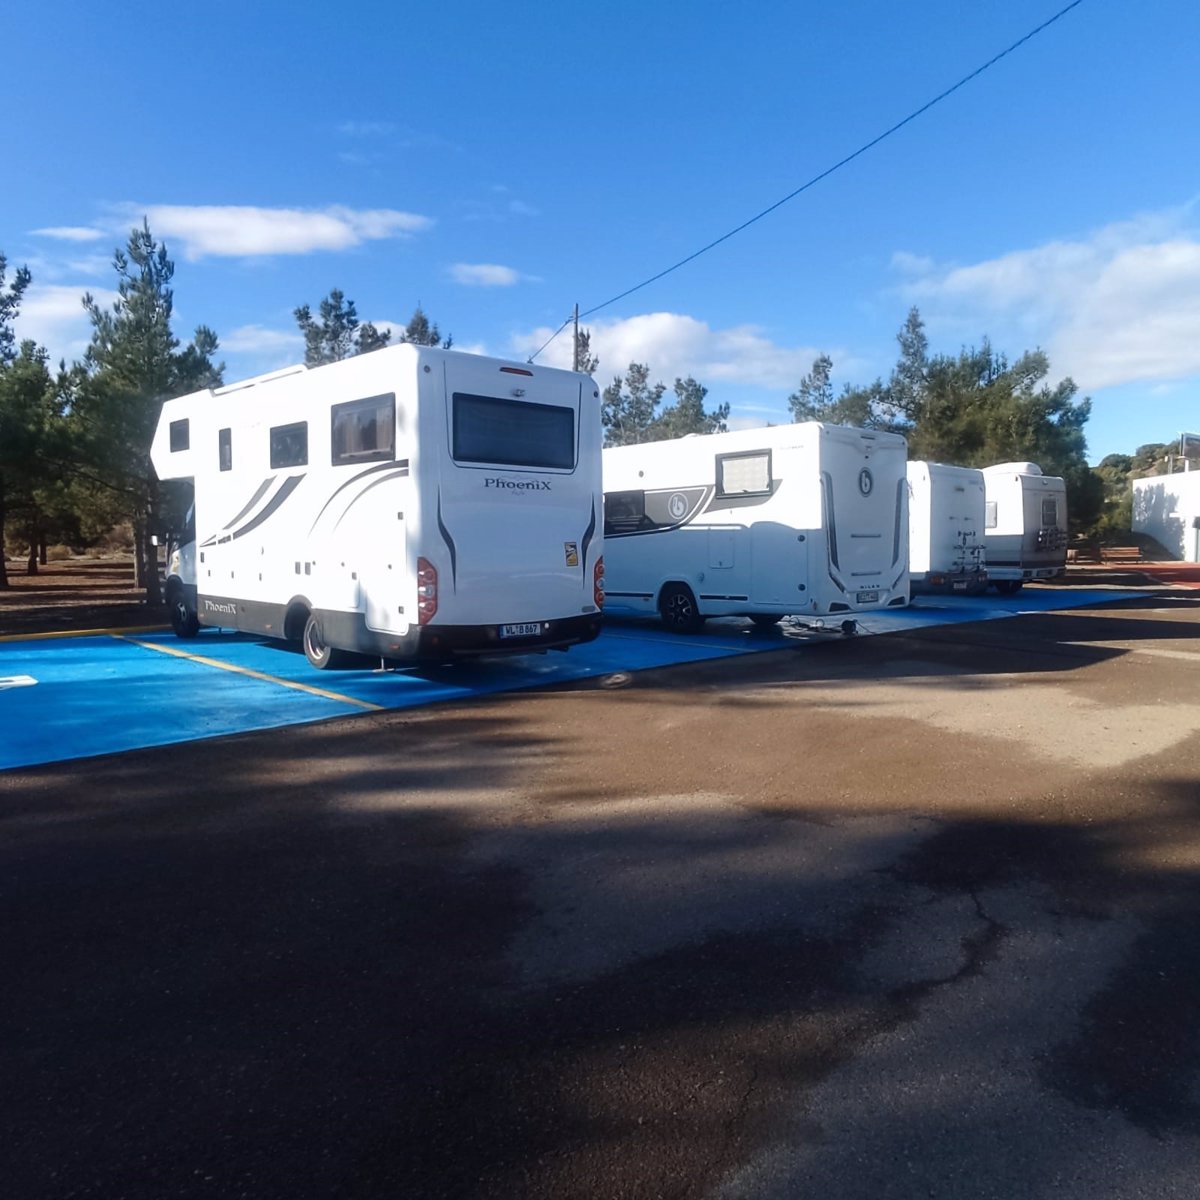 El nuevo aparcamiento de caravanas en Puerto Lumbreras llena sus